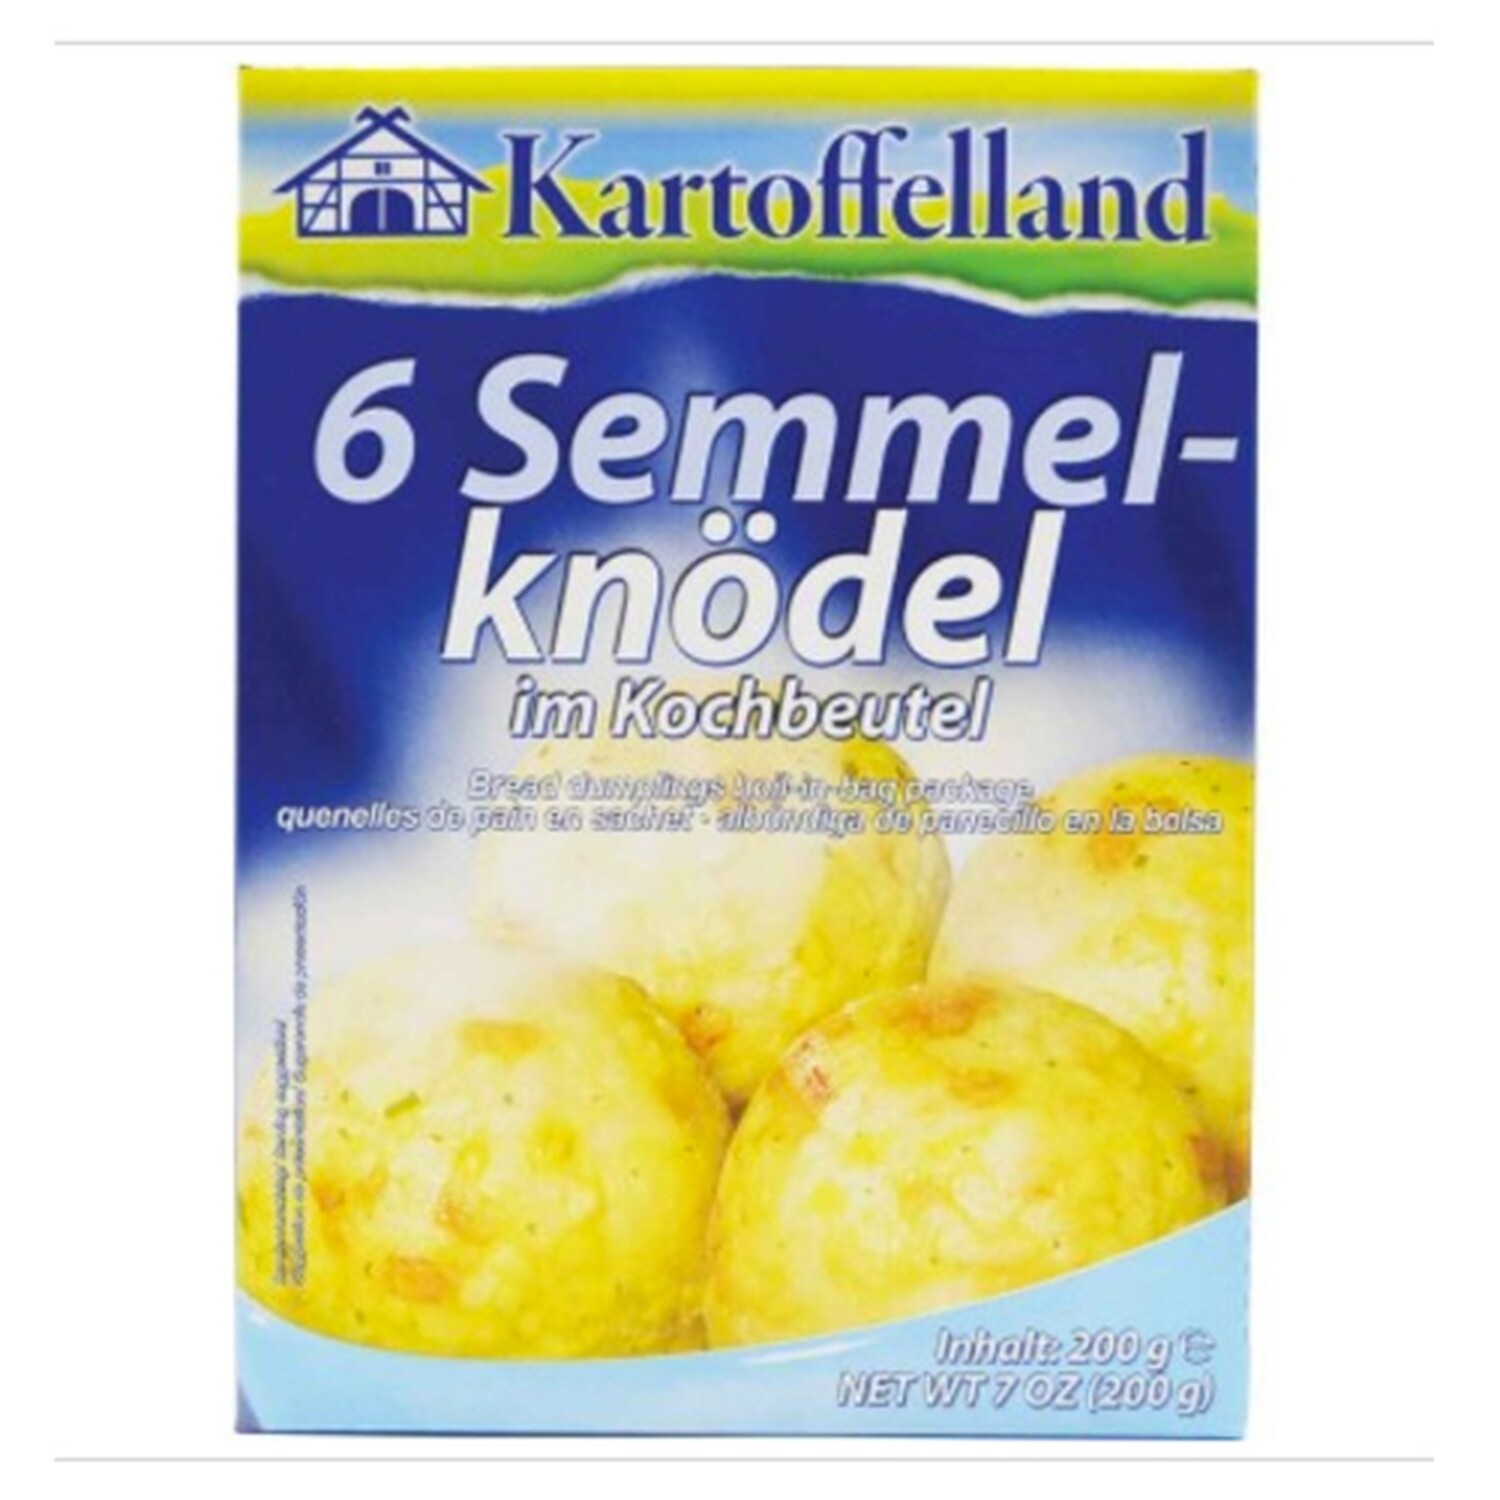 Kartoffelland 6 Bread Dumplings in Boil Bags (6 Semmel-Knödel im Kochbeutel) 7 oz (200g)